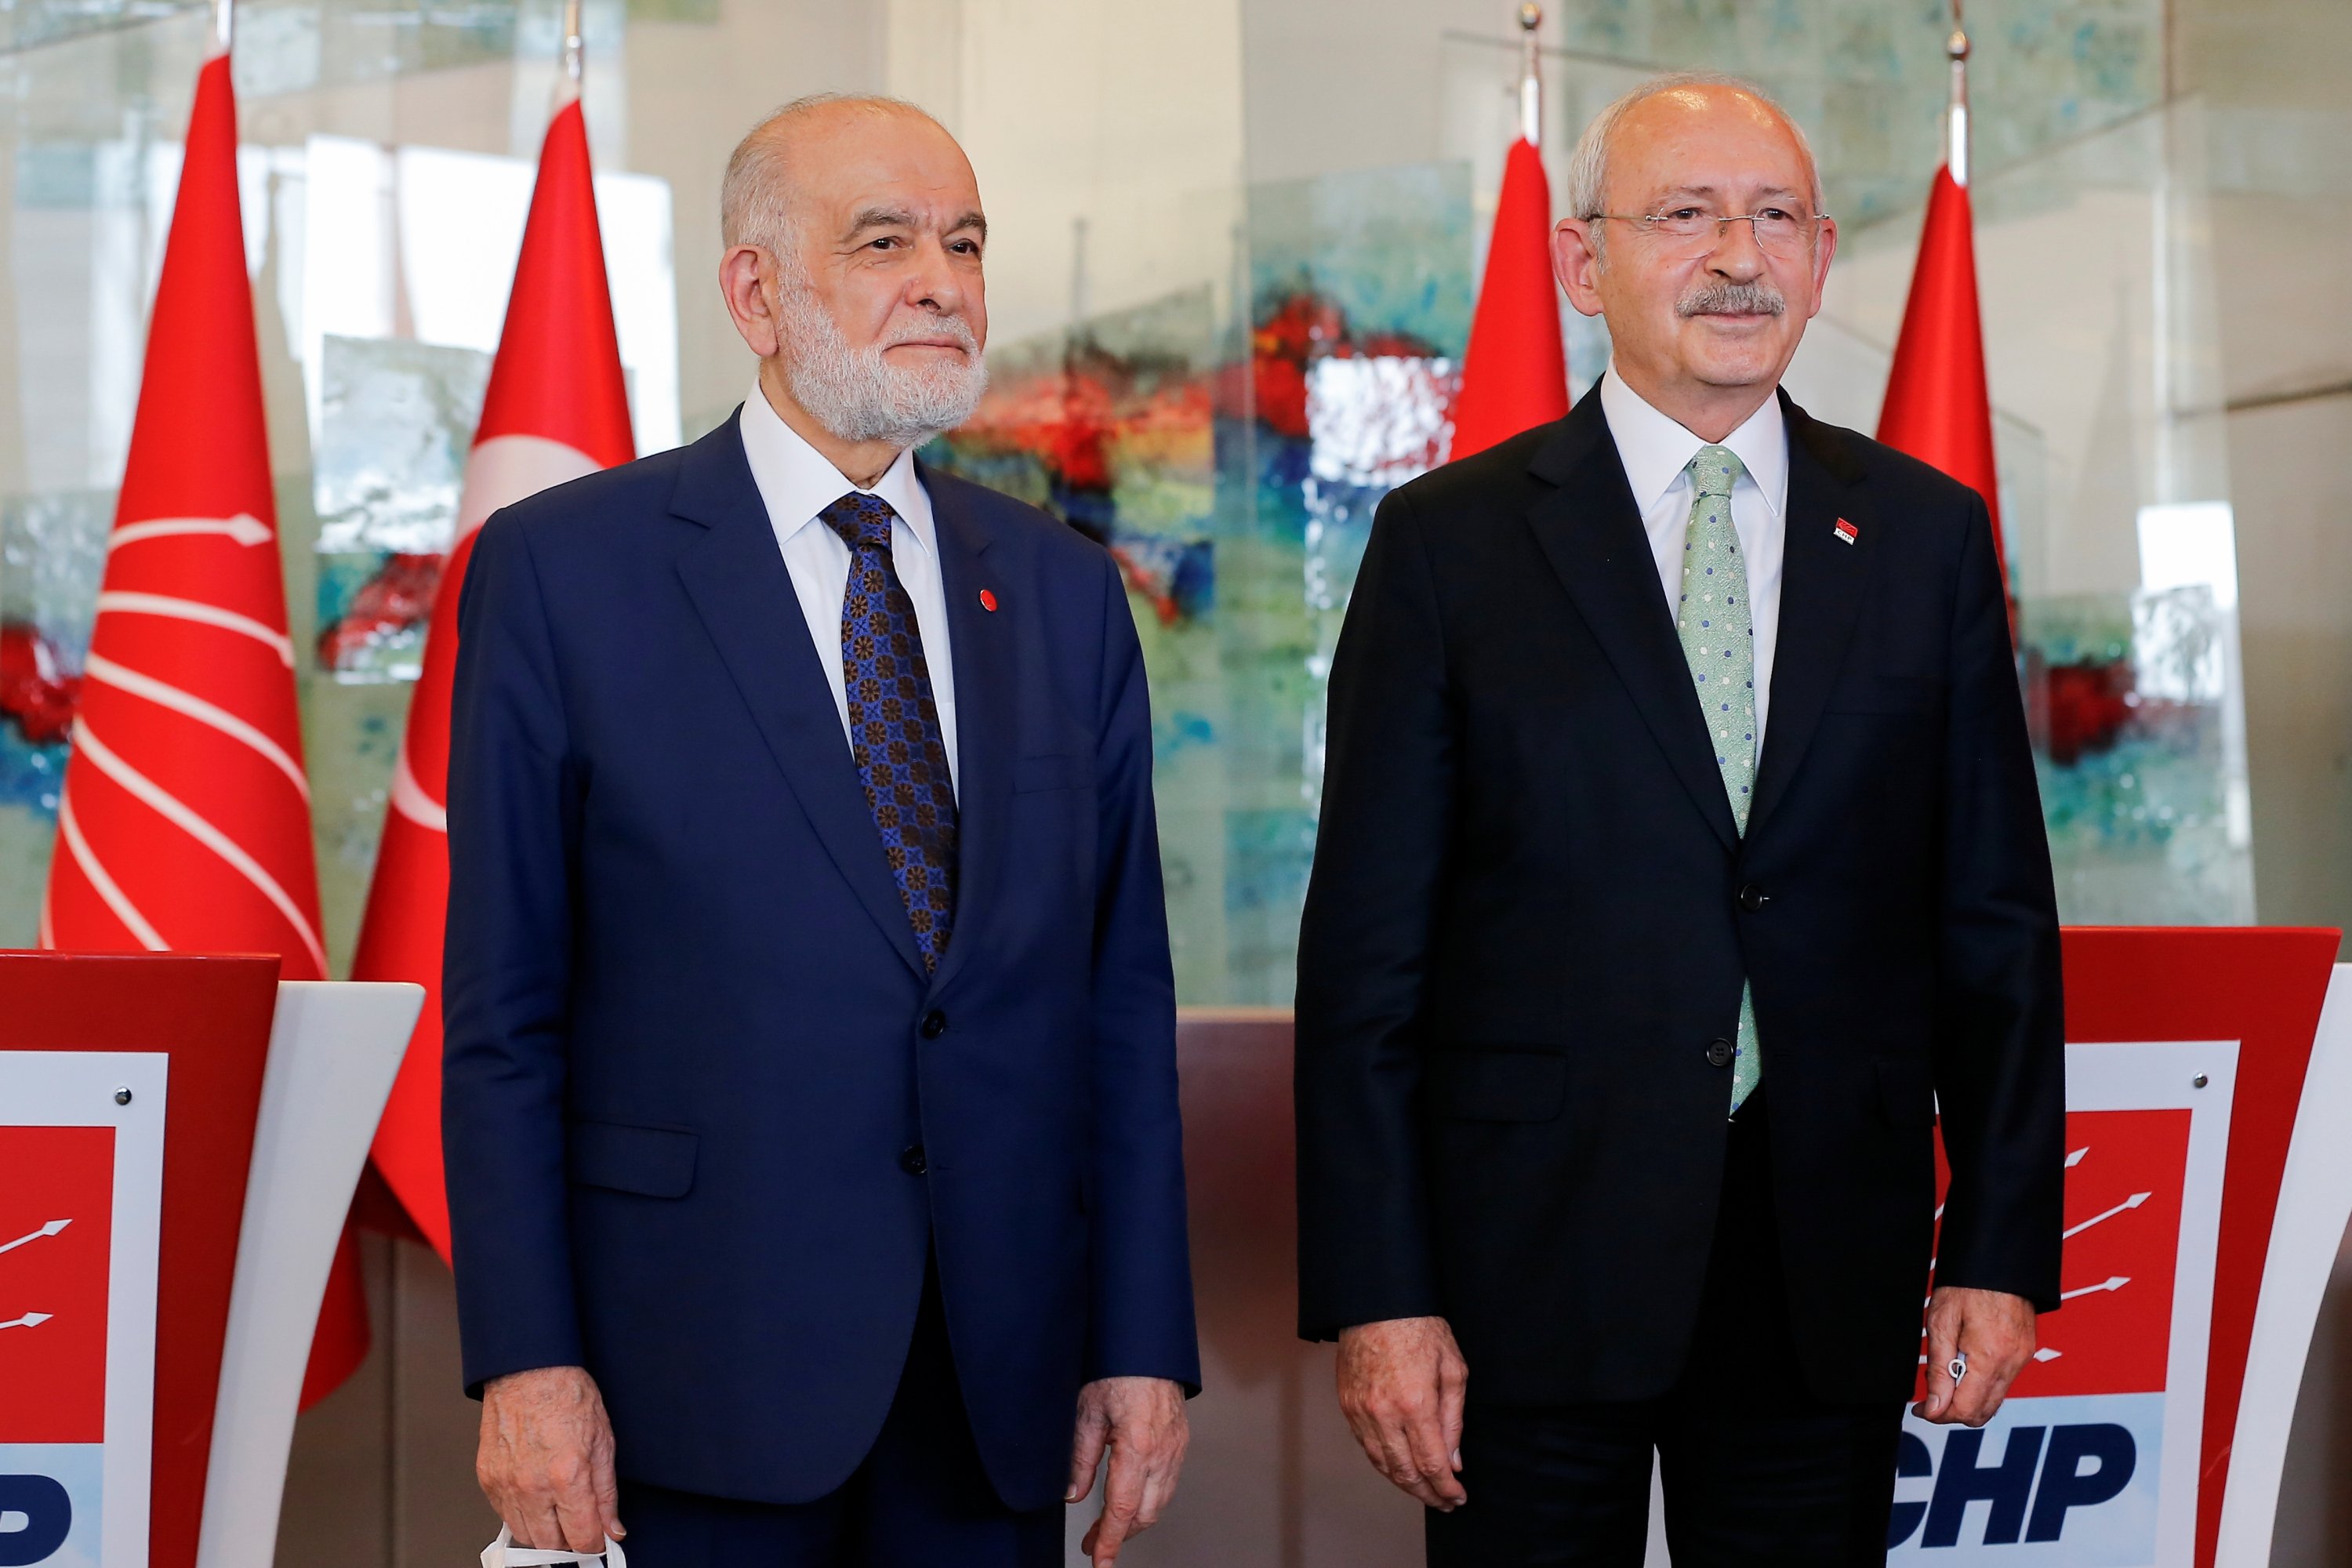 Ketua Partai Felicity (SP) Temel Karamollaoğlu (kiri) dan oposisi utama Ketua Partai Rakyat Republik (CHP) Kemal Kılıçdaroğlu berpose setelah konferensi pers di ibu kota Ankara, Turki, 11 Oktober 2021. (Foto Reuters)